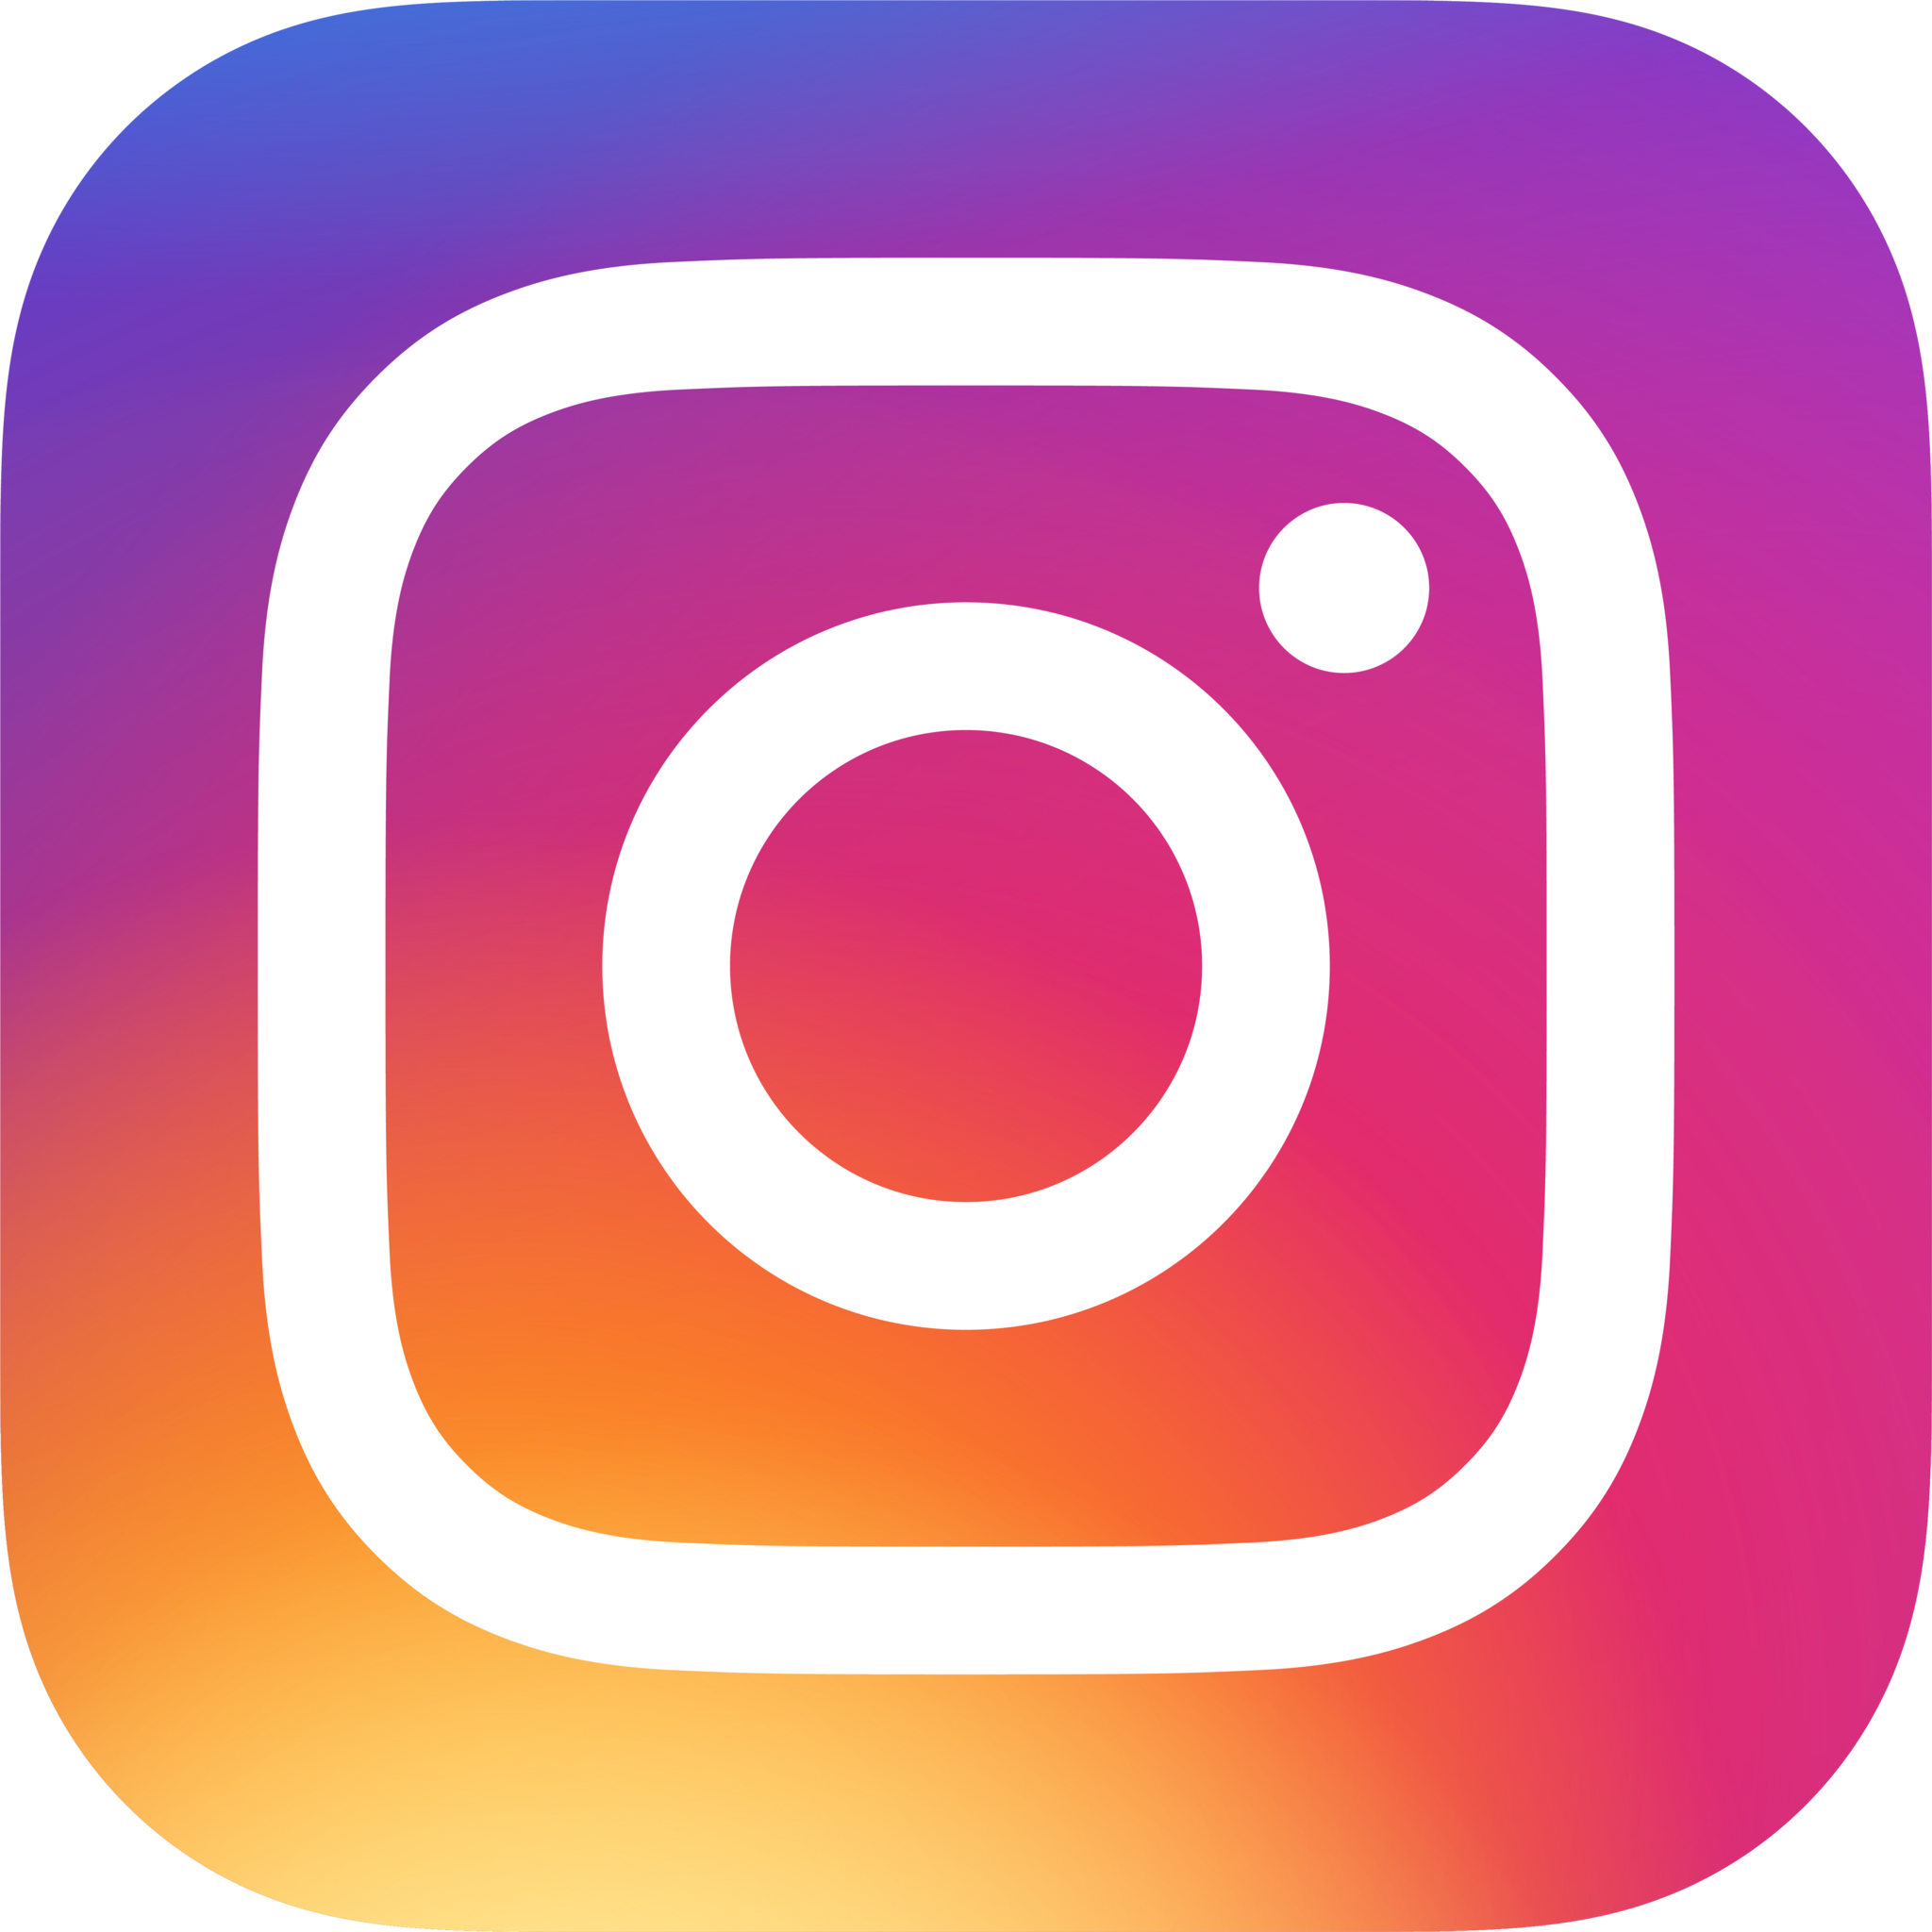 Deangelo - Pegatinas con logo de Instagram (3 unidades): Amazon.es: Hogar